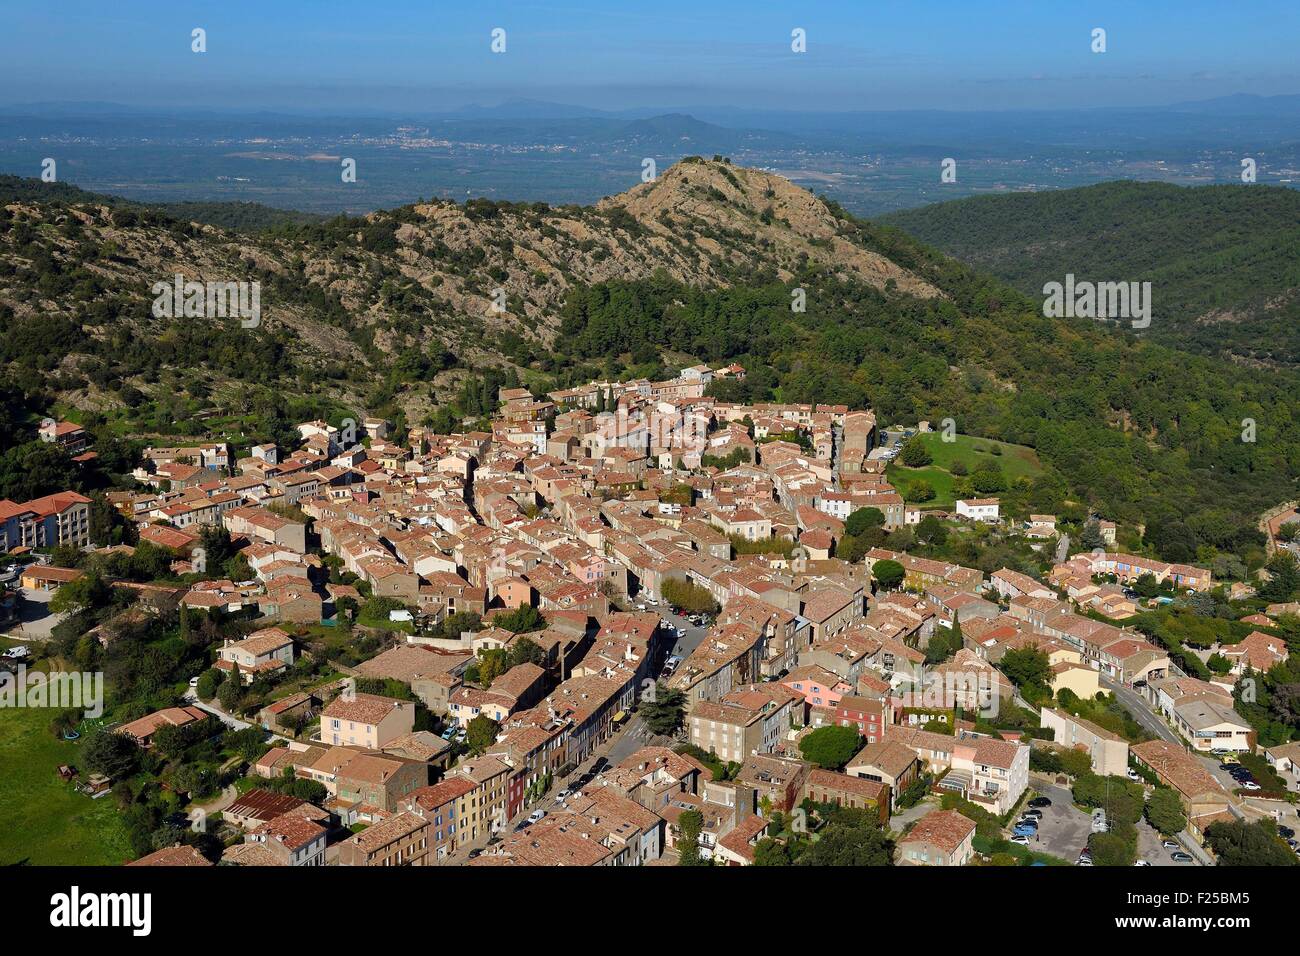 France, Var, Massif des Maures, La Garde Freinet (aerial view) Stock Photo